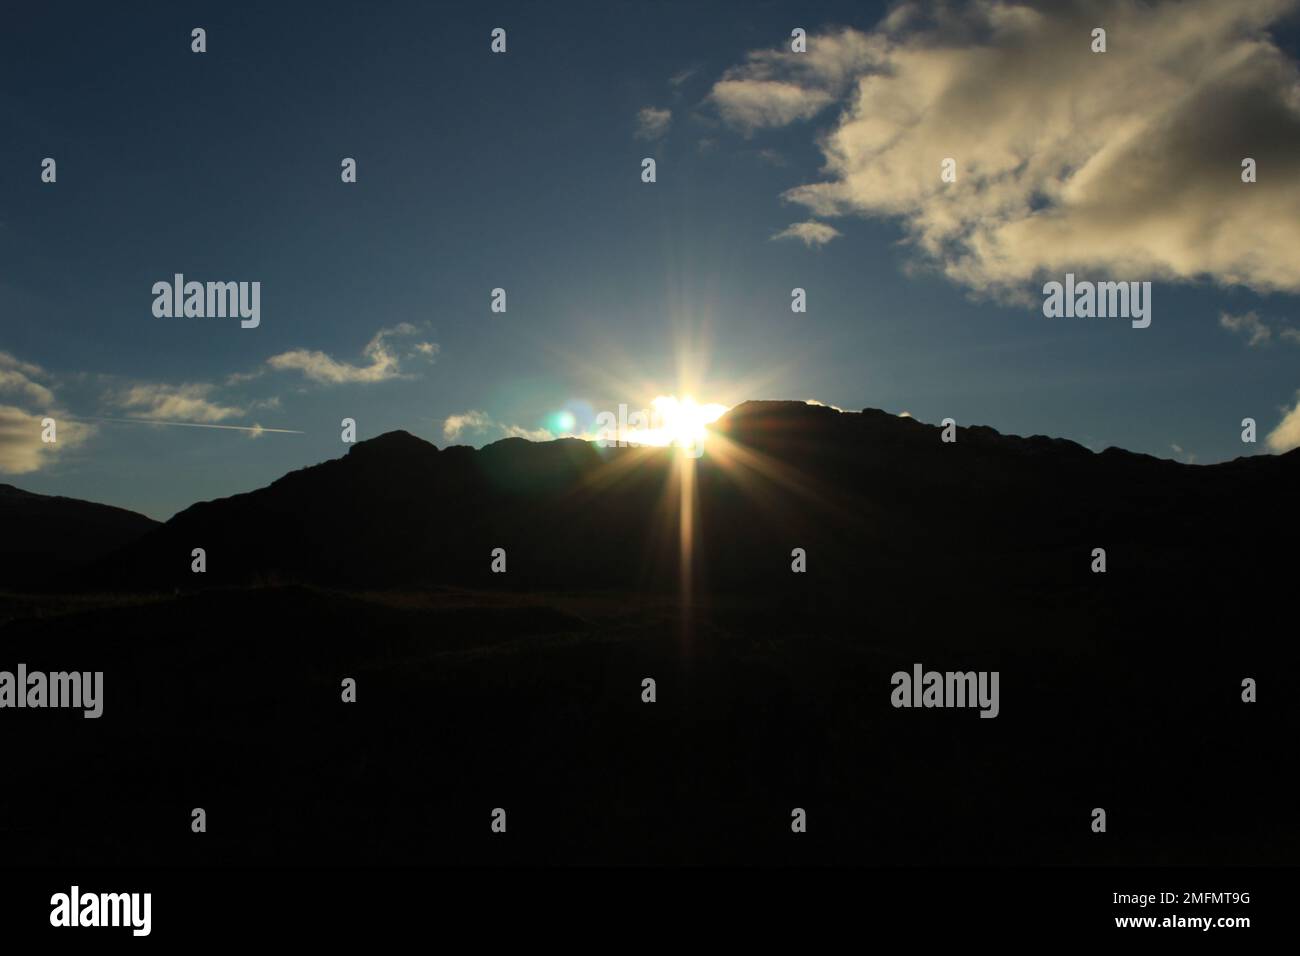 Sonnenaufgang über den silhouettierten Klippen mit blauem Himmel dahinter - Hintergrundkonzept für Neuaufgang, Hoffnung, Spiritualität, Neuanfänge Stockfoto